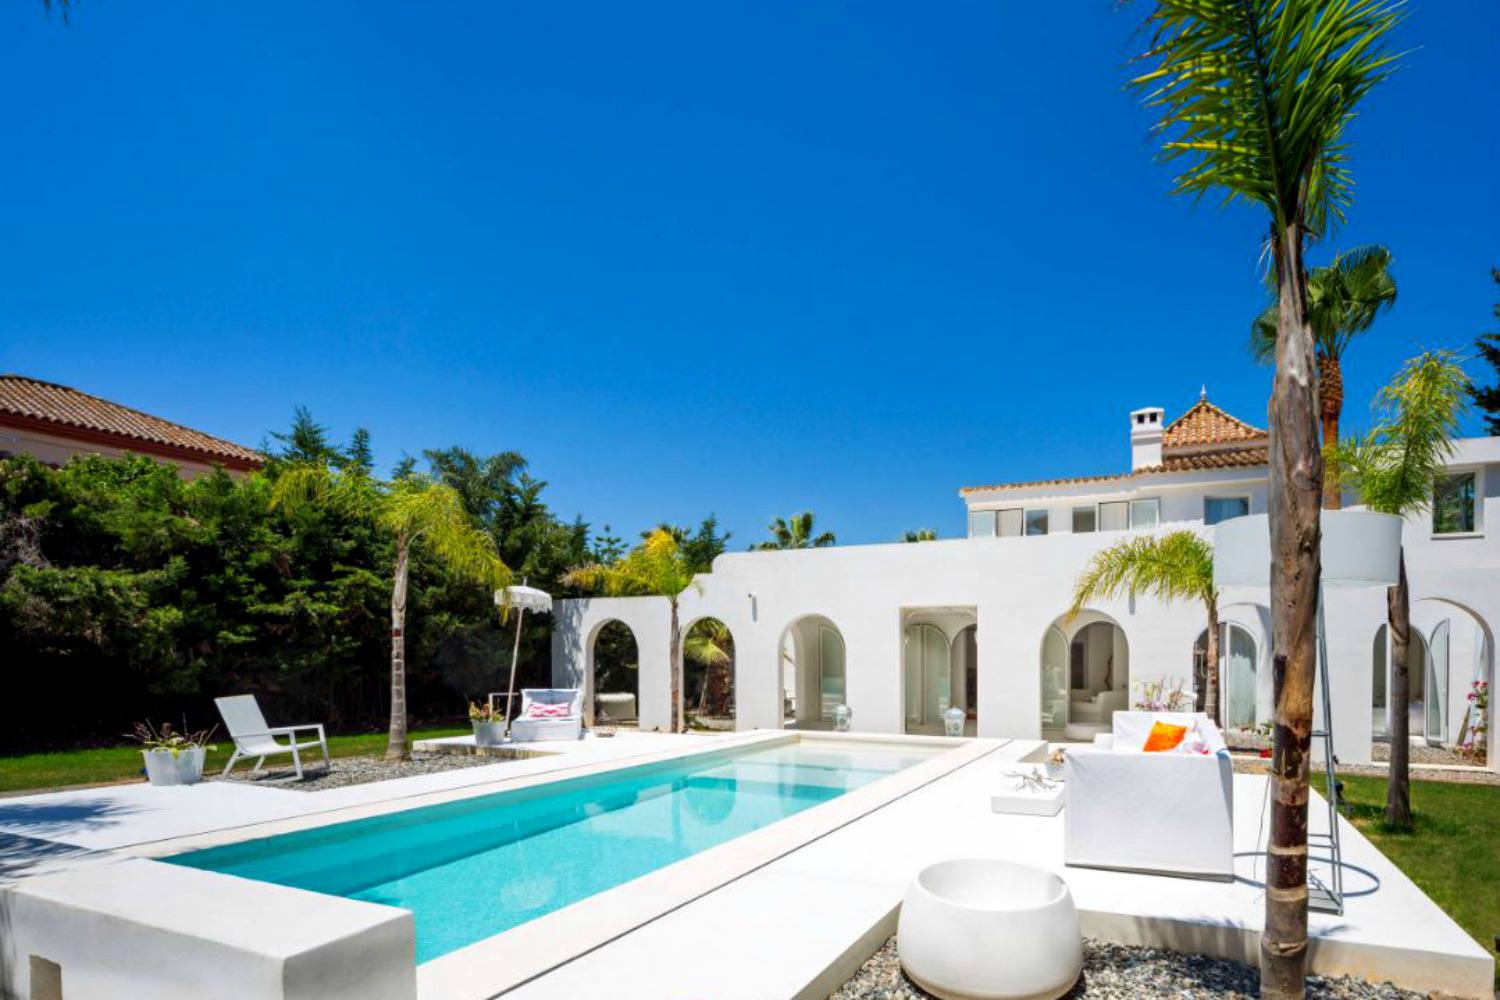 Hồ bơi được thiết kế bởi Etno Design Marbella tại Madrid với phong cách thanh lịch và tinh tế, điểm tô sắc xanh dịu mát giữa không gian ngoài trời phủ đầy sắc trắng.